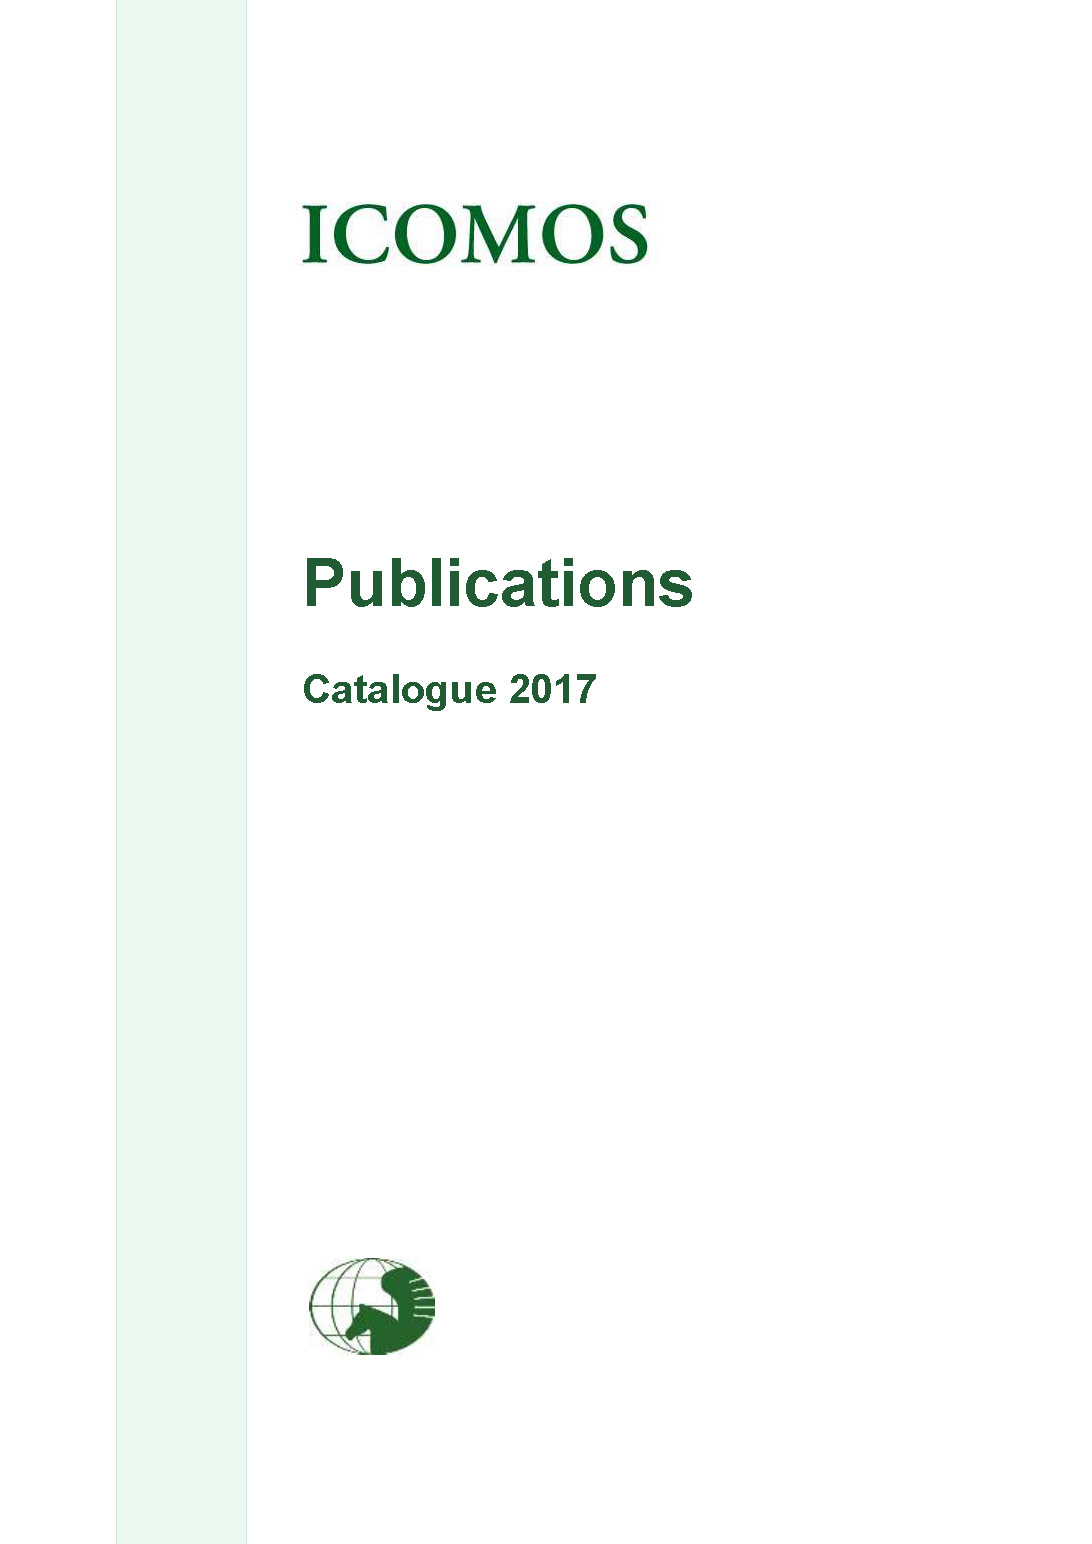 ICOMOS catalogue publications 2017cover